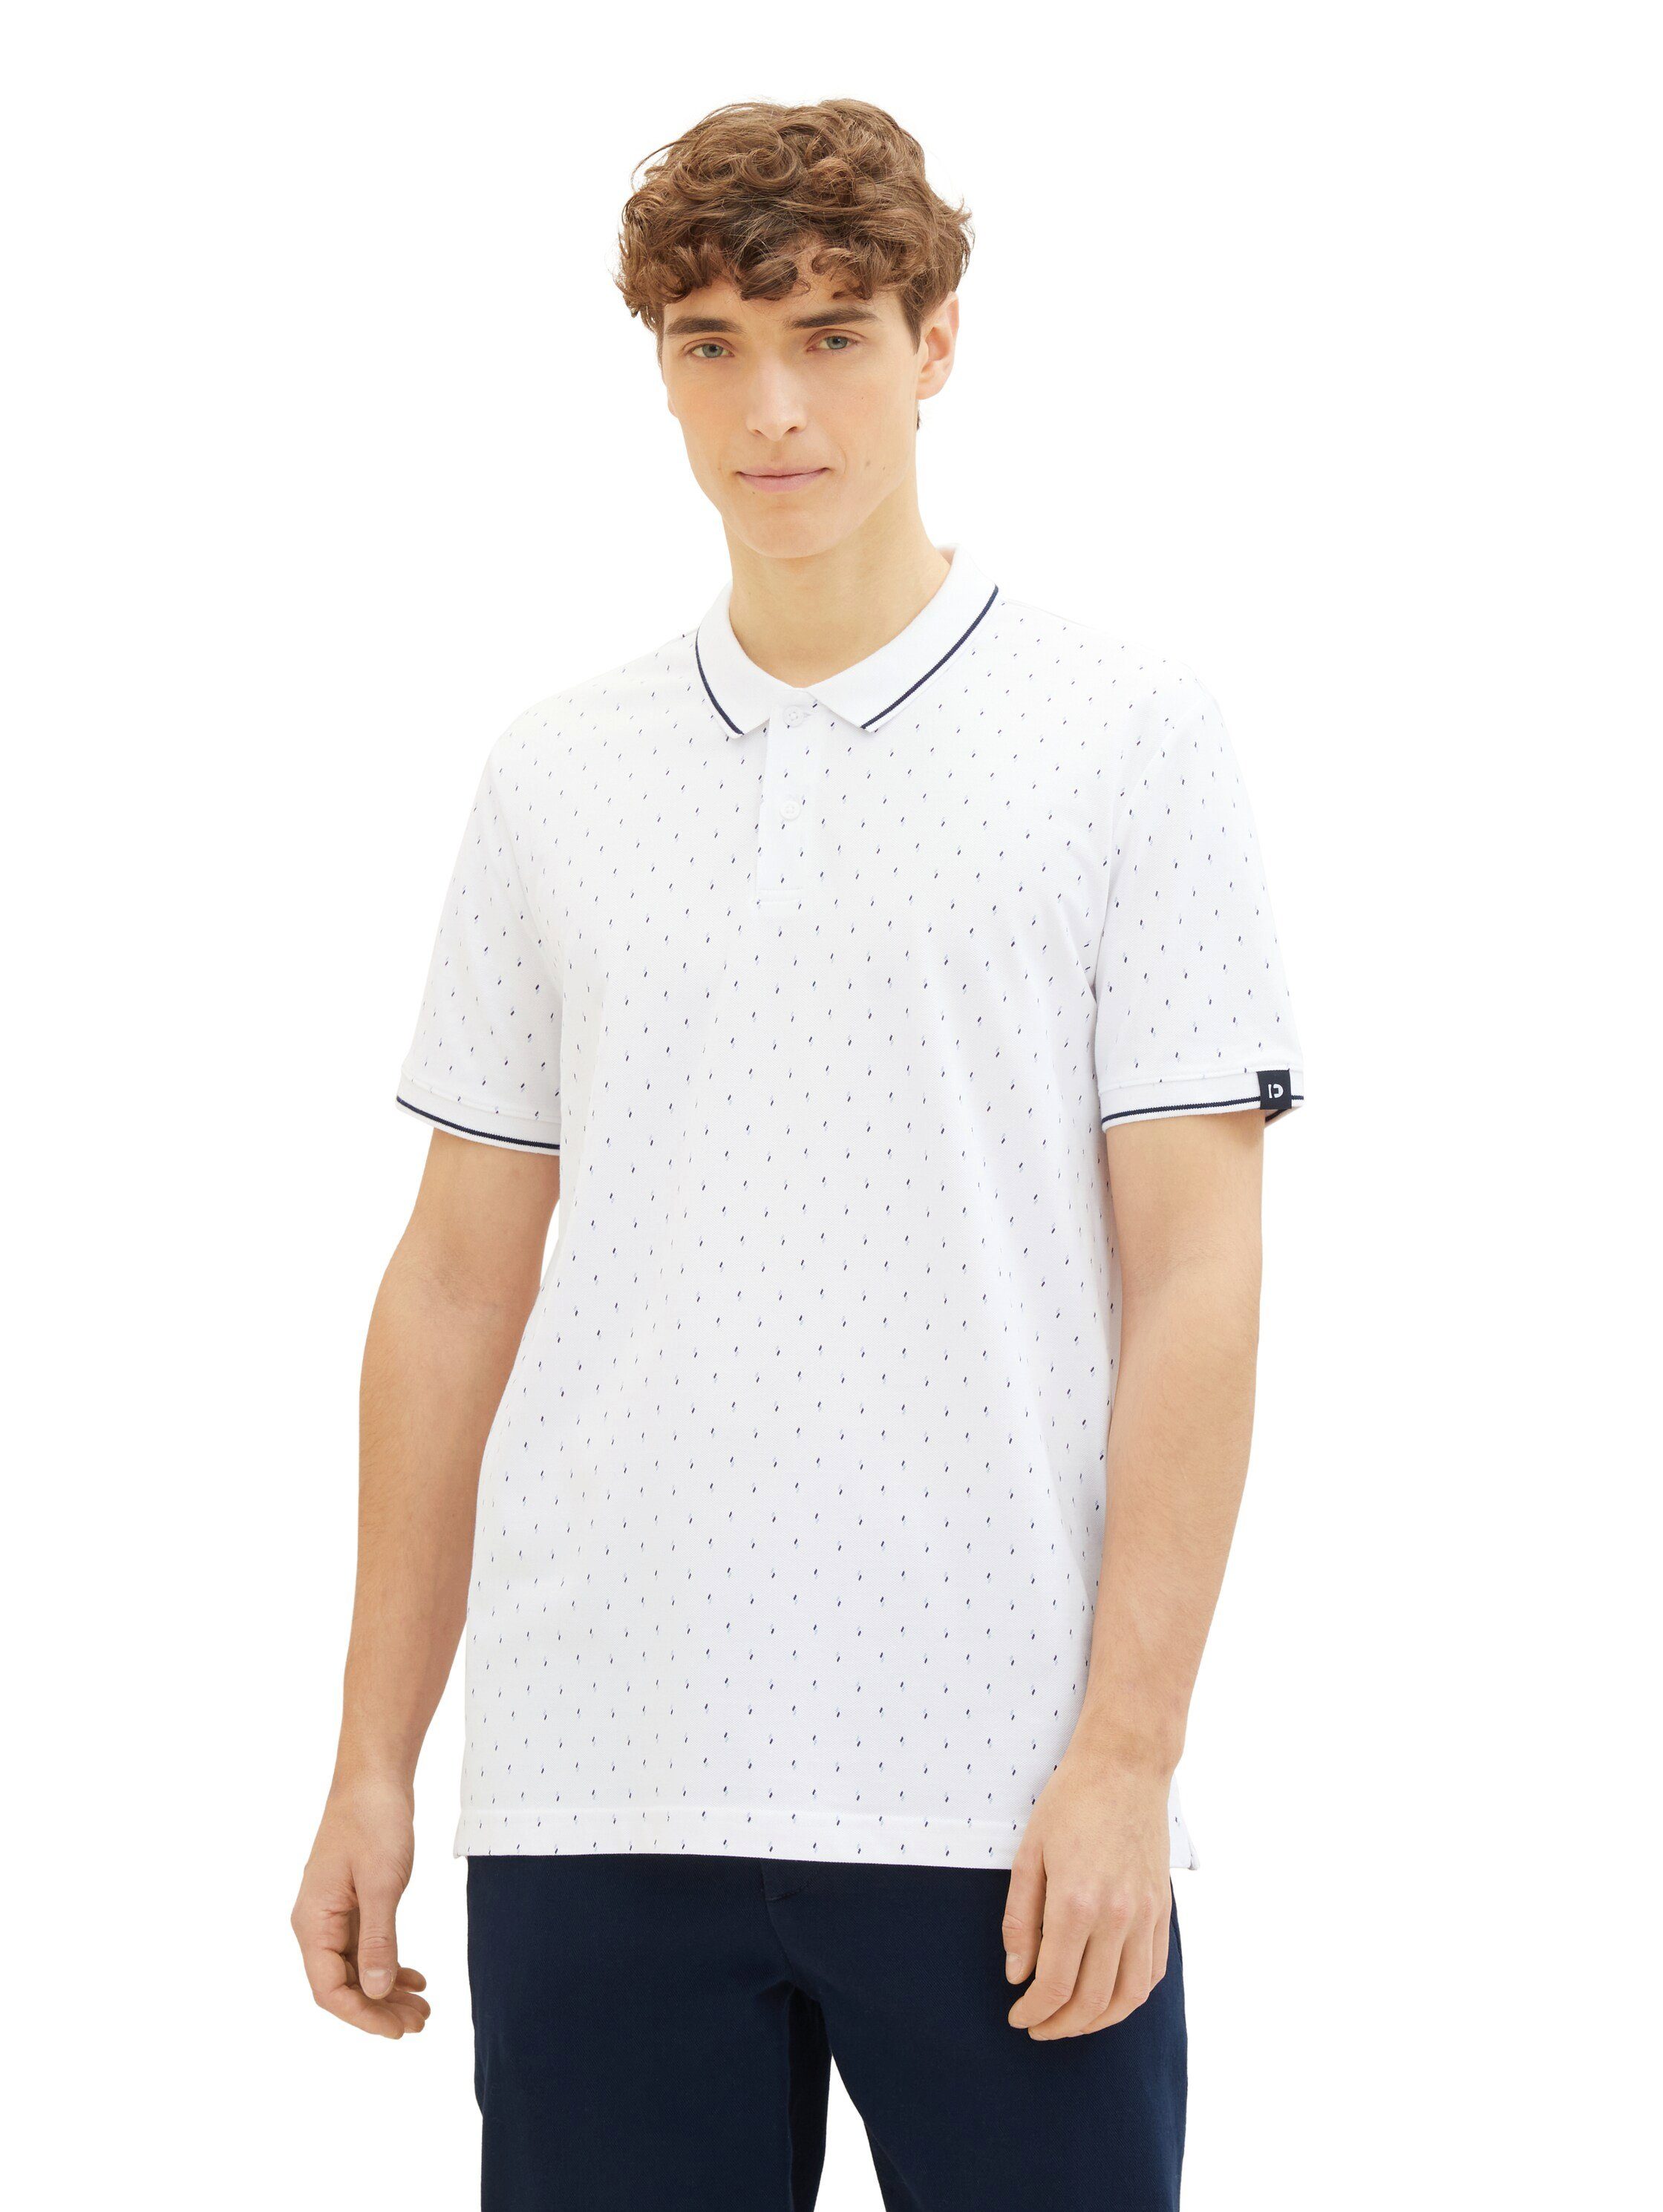 TOM TAILOR Denim Poloshirt mit Minimal-Print und aus reiner Baumwolle